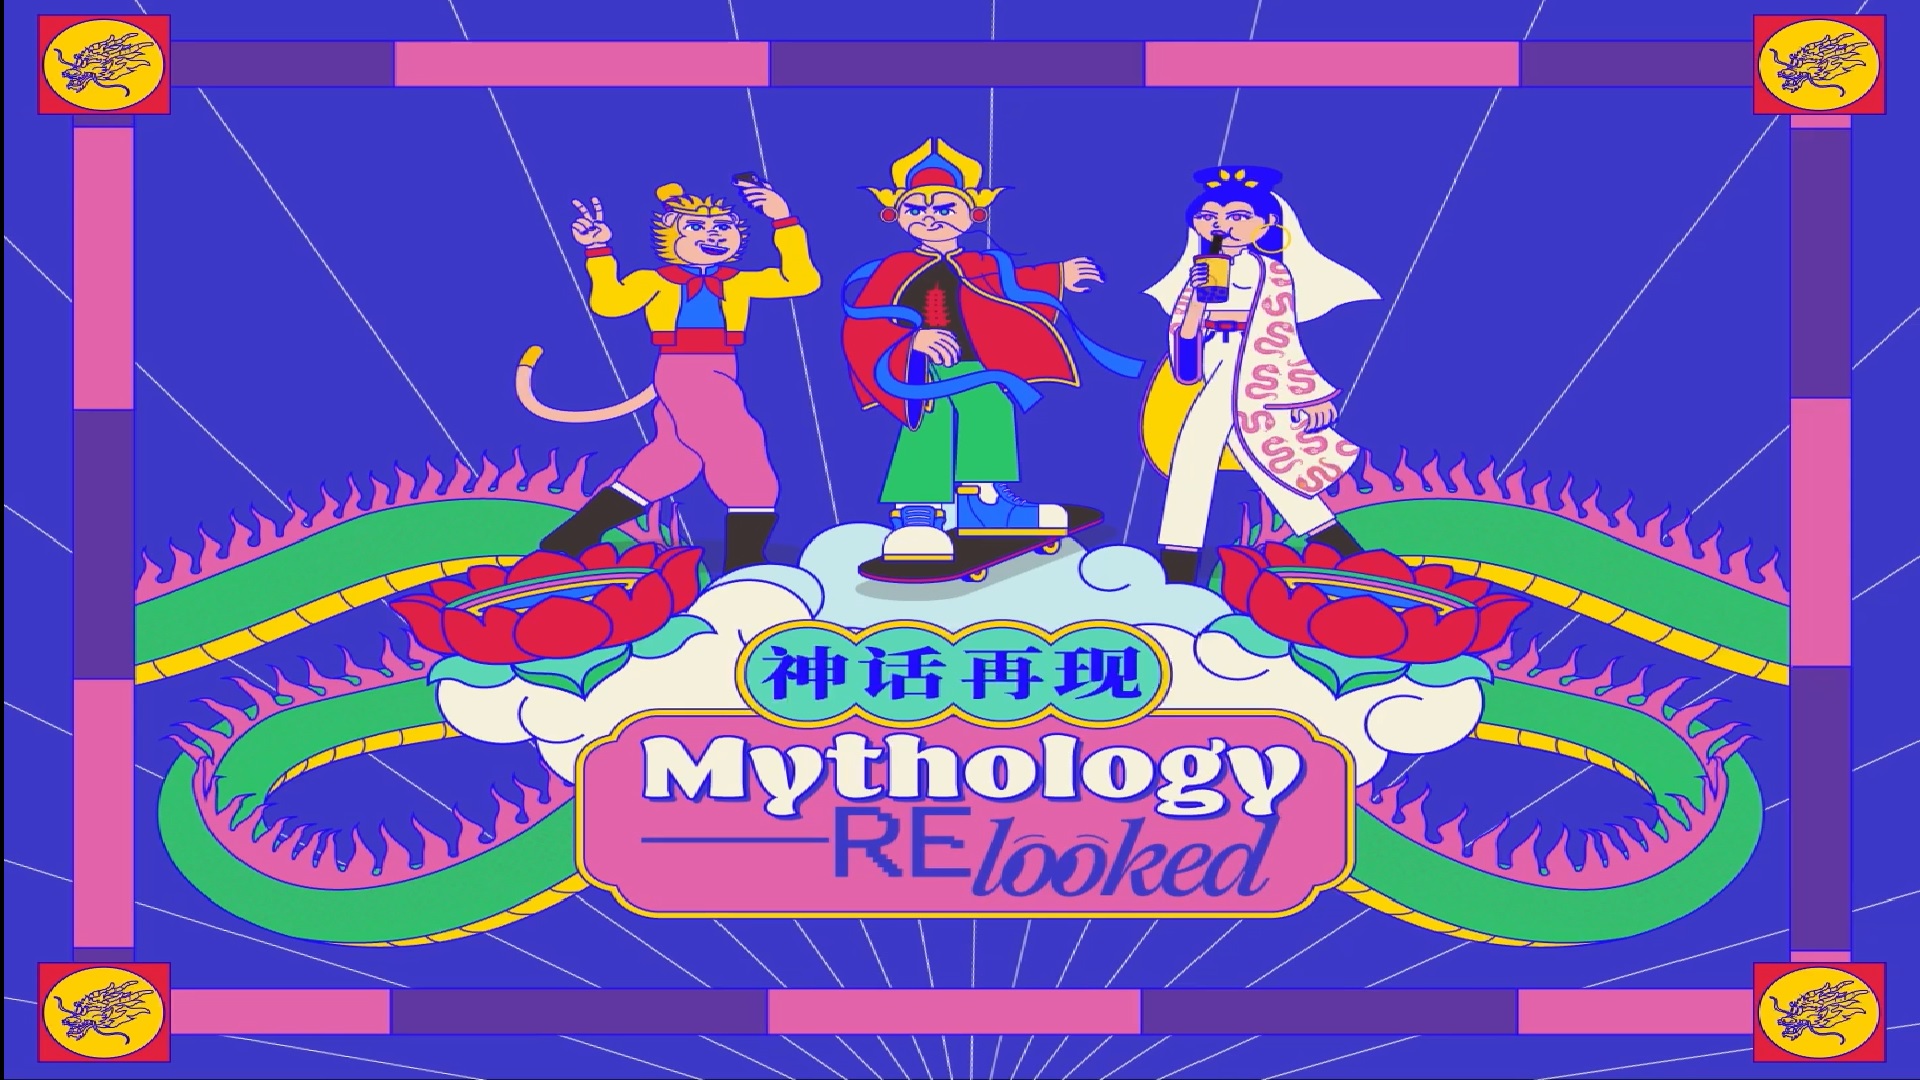 mythology-relooked-remix-2